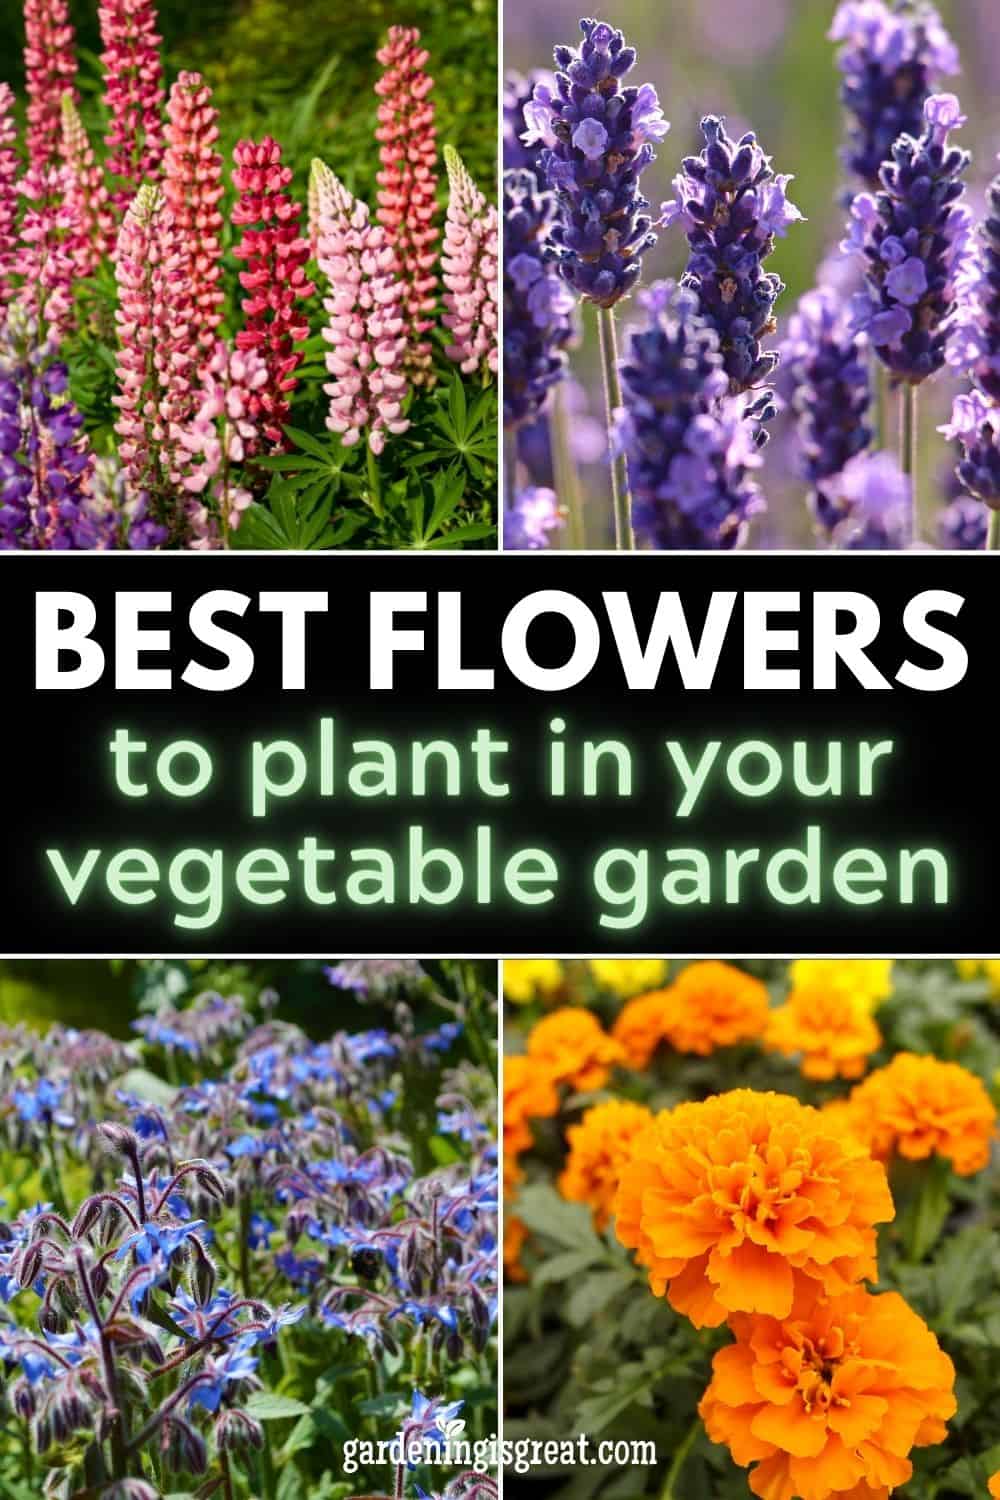 Bedste blomster at plante rundt i din køkkenhave